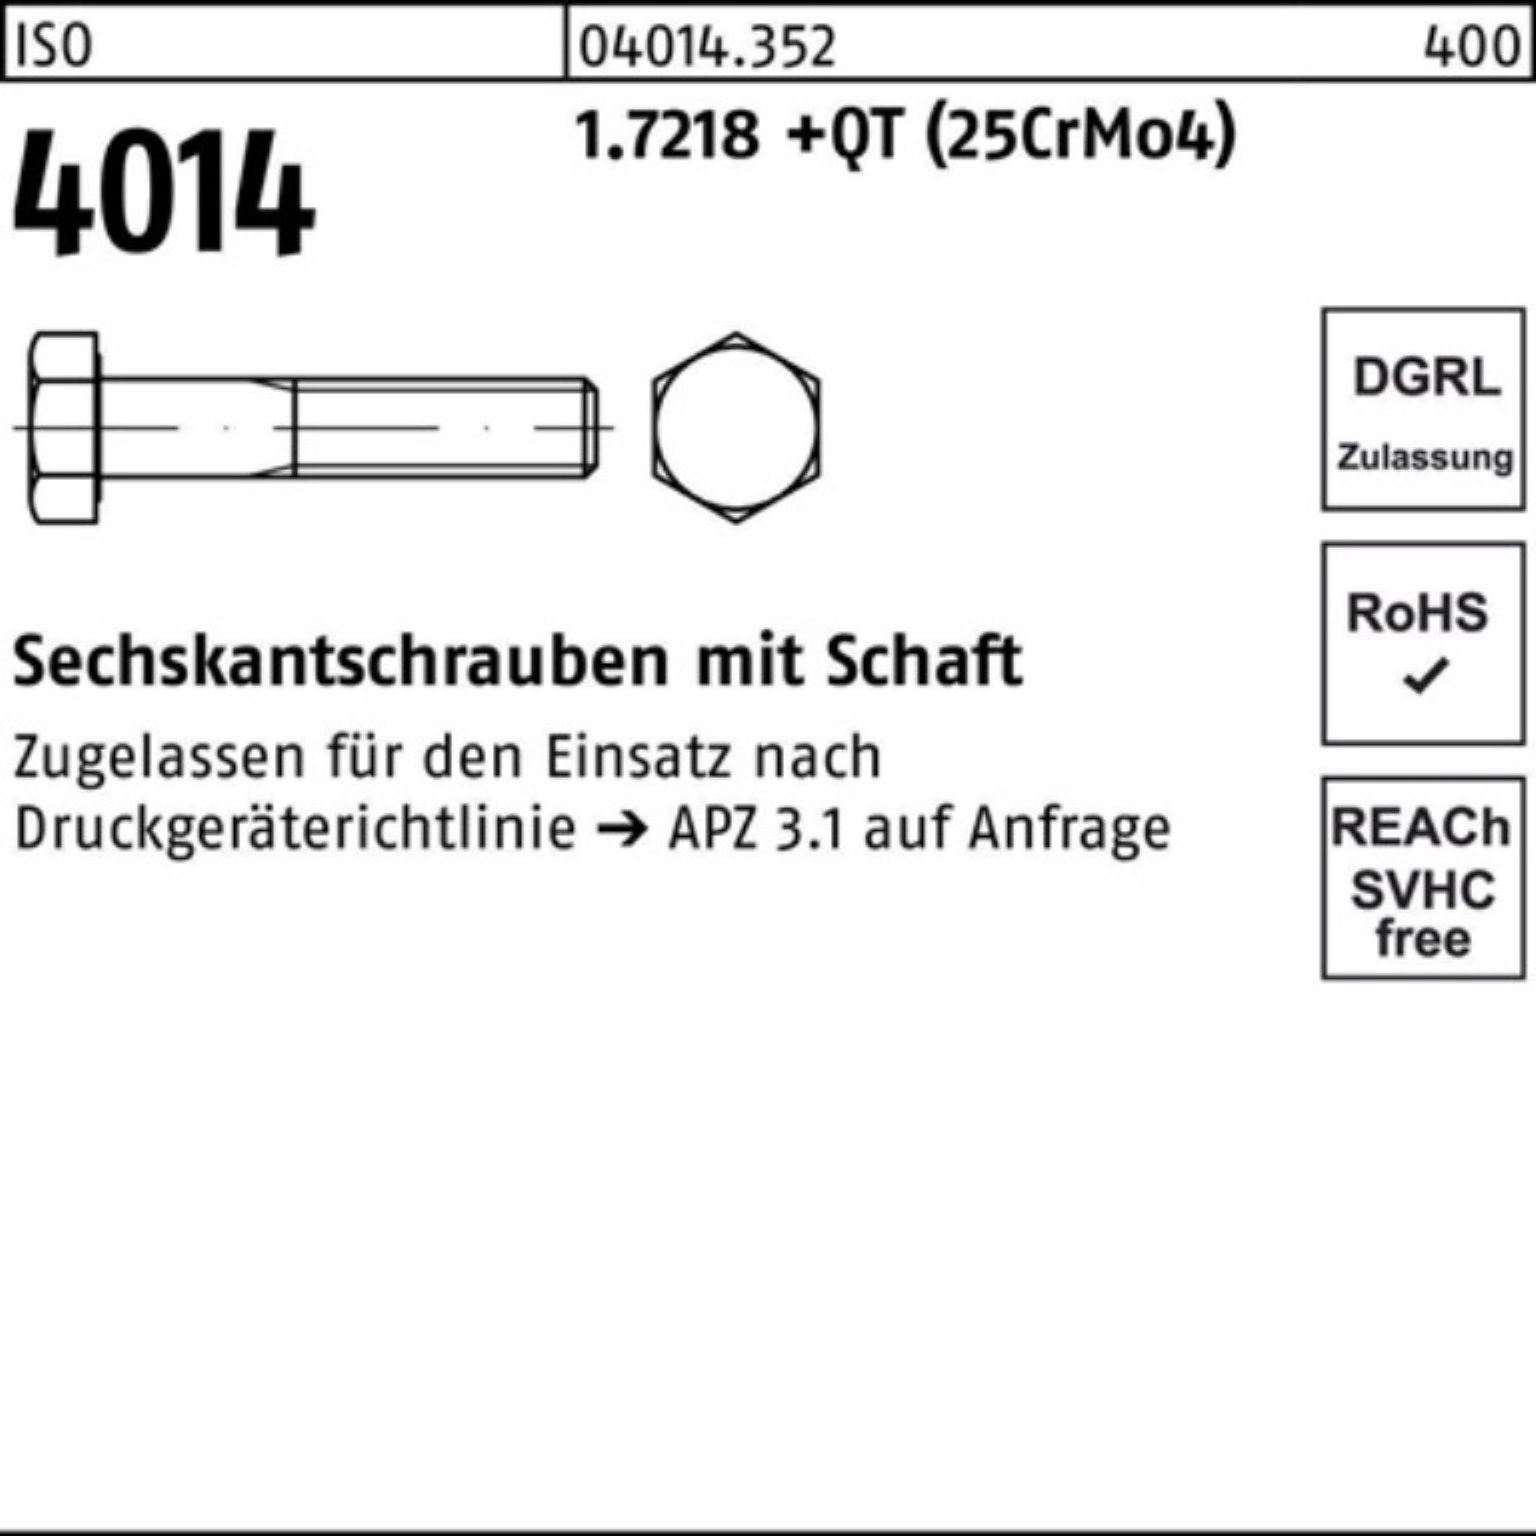 200 Sechskantschraube Pack Sechskantschraube 100er (25Cr M27x 1.7218 Schaft 4014 +QT Bufab ISO